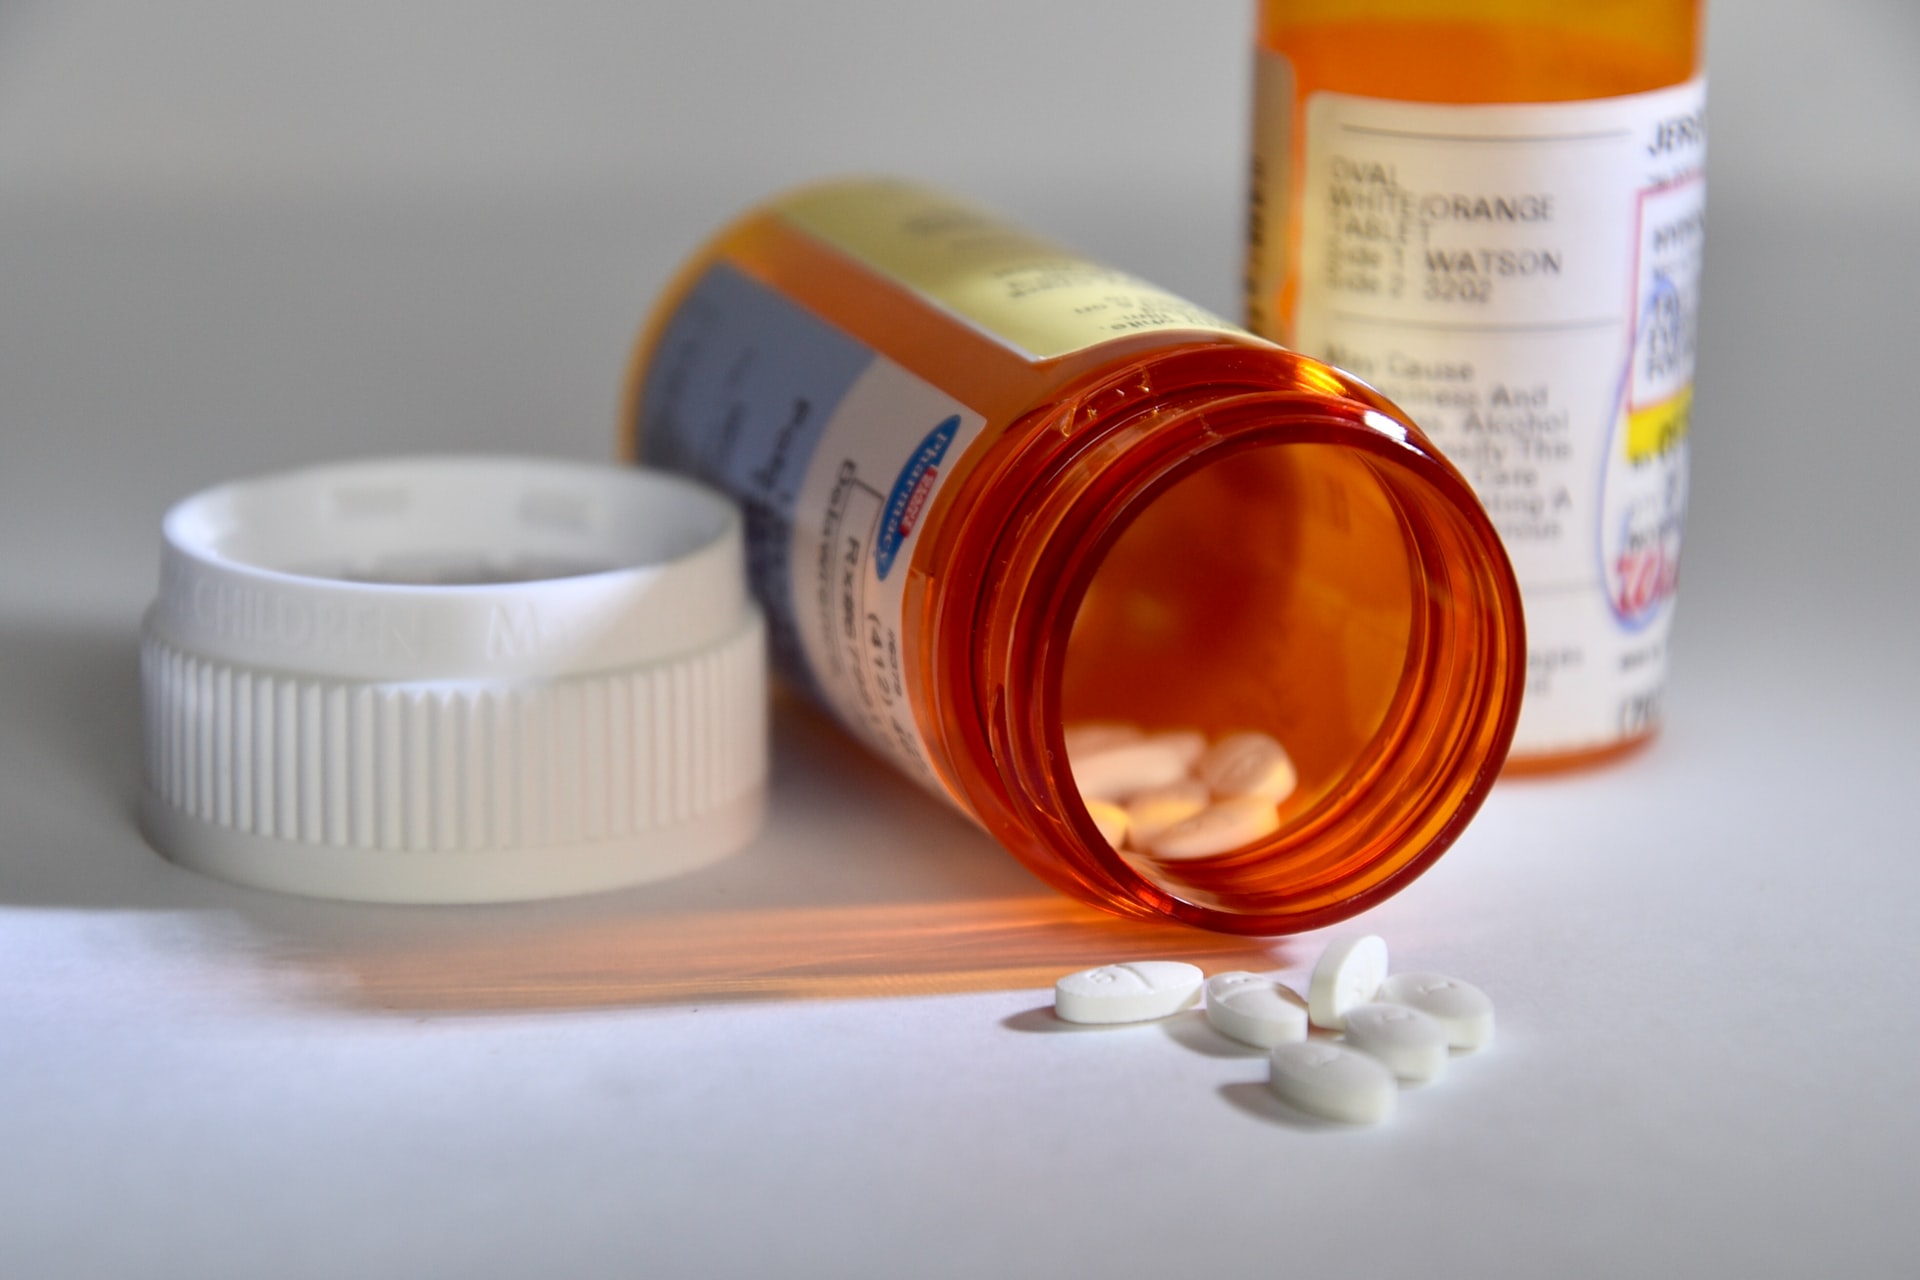 prescription medication and orange bottles